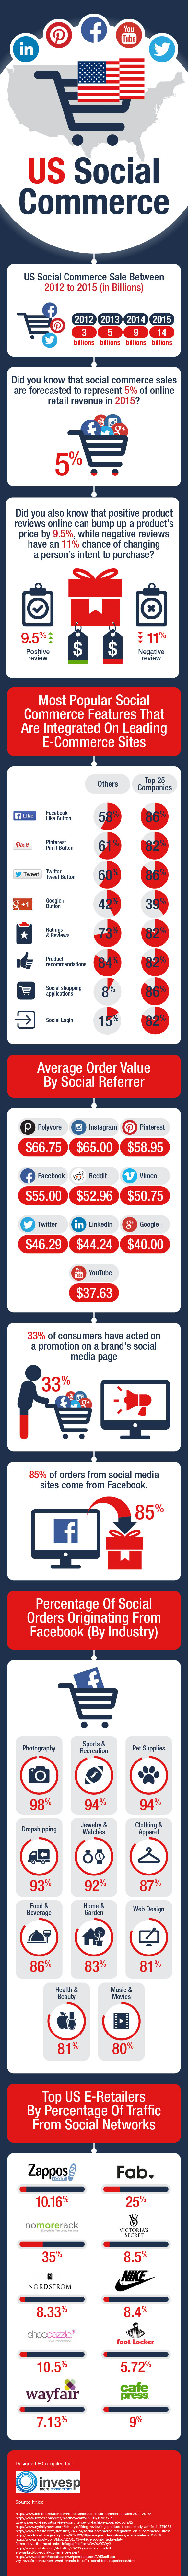 infografica social commerce